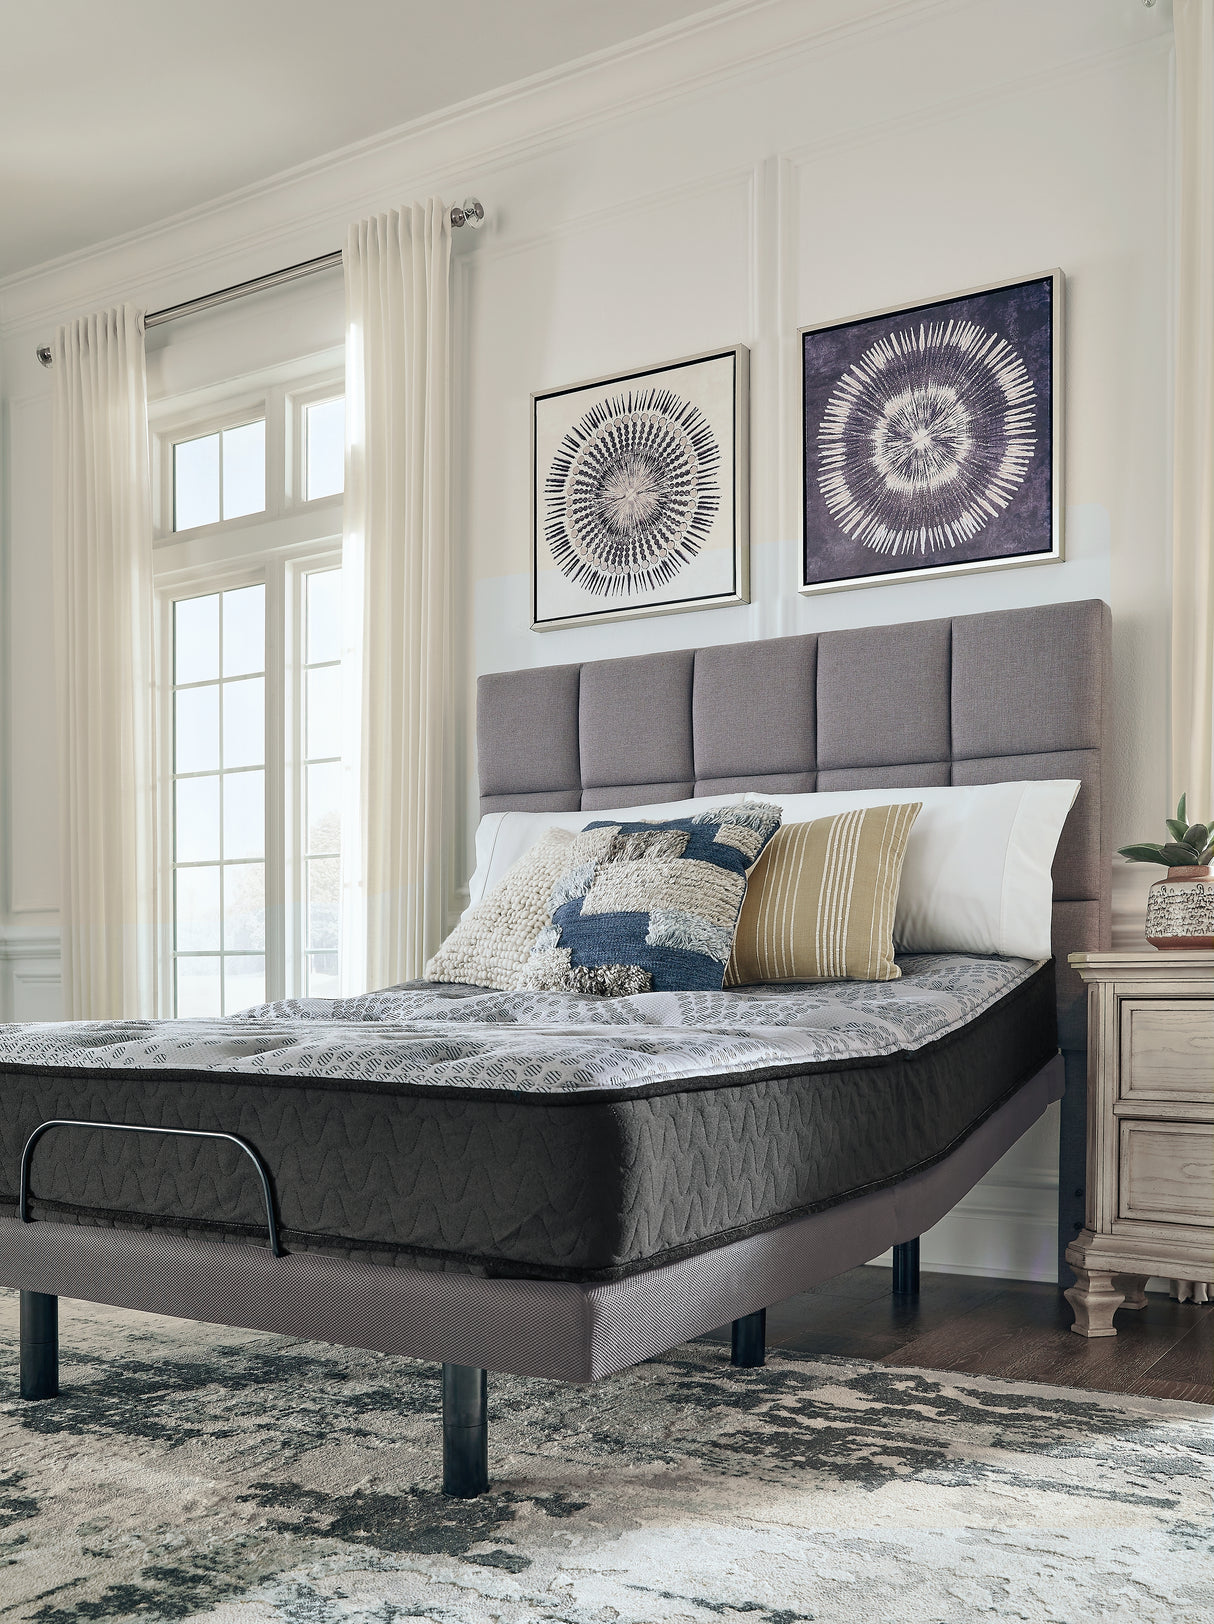 Comfort Plus Gray Twin Mattress - M50911 - Luna Furniture